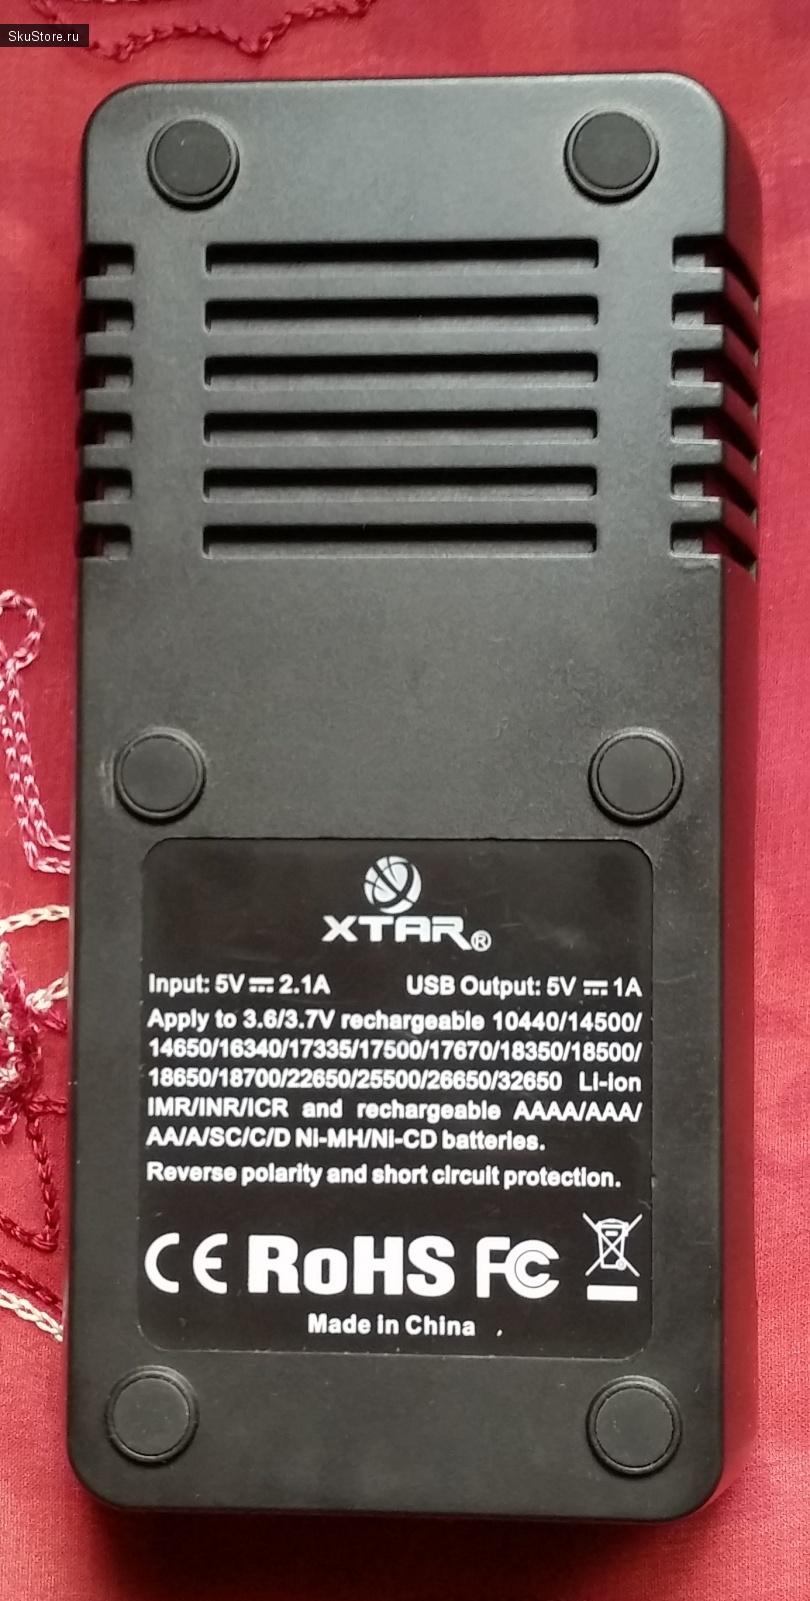 Универсальное зарядное устройство Xtar VC2 plus master